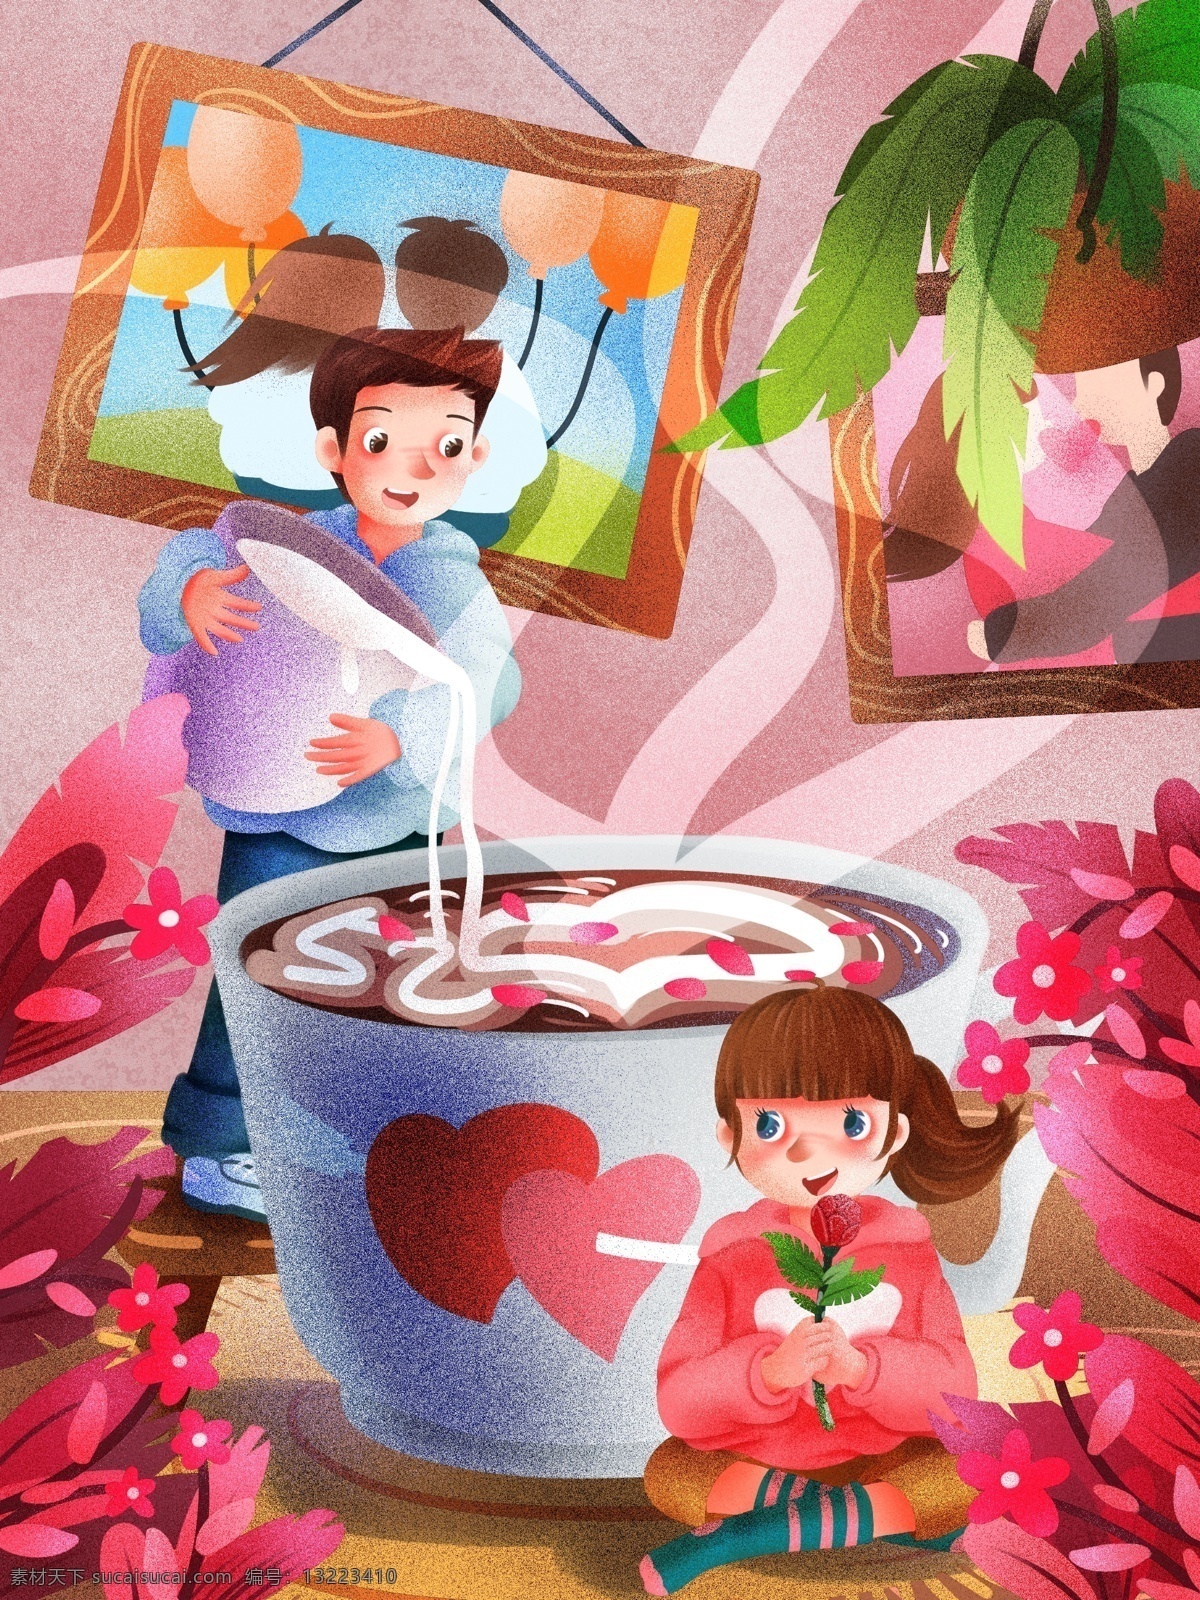 520 男生 做 拉花 咖啡 表白 女生 清新 创意 插画 情侣 情侣照 植物 玫瑰花 粉色 气球 爱心 丘比特之箭